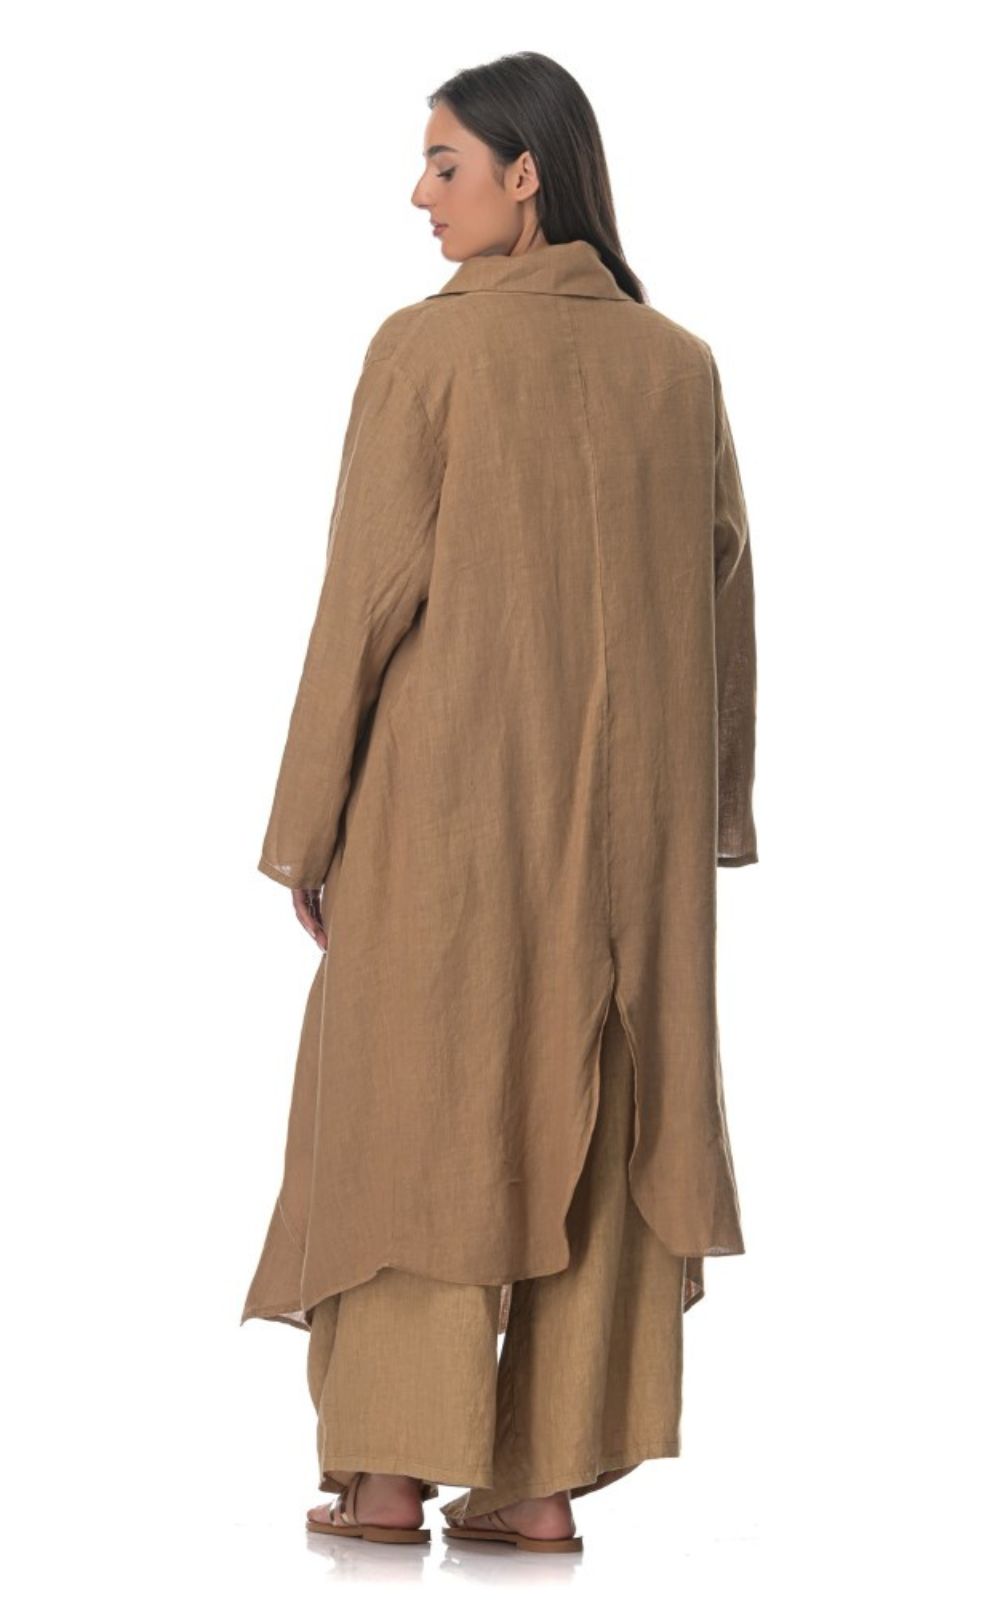 Ζακέτα Γυναικεία Λινή Camel-My Boutique